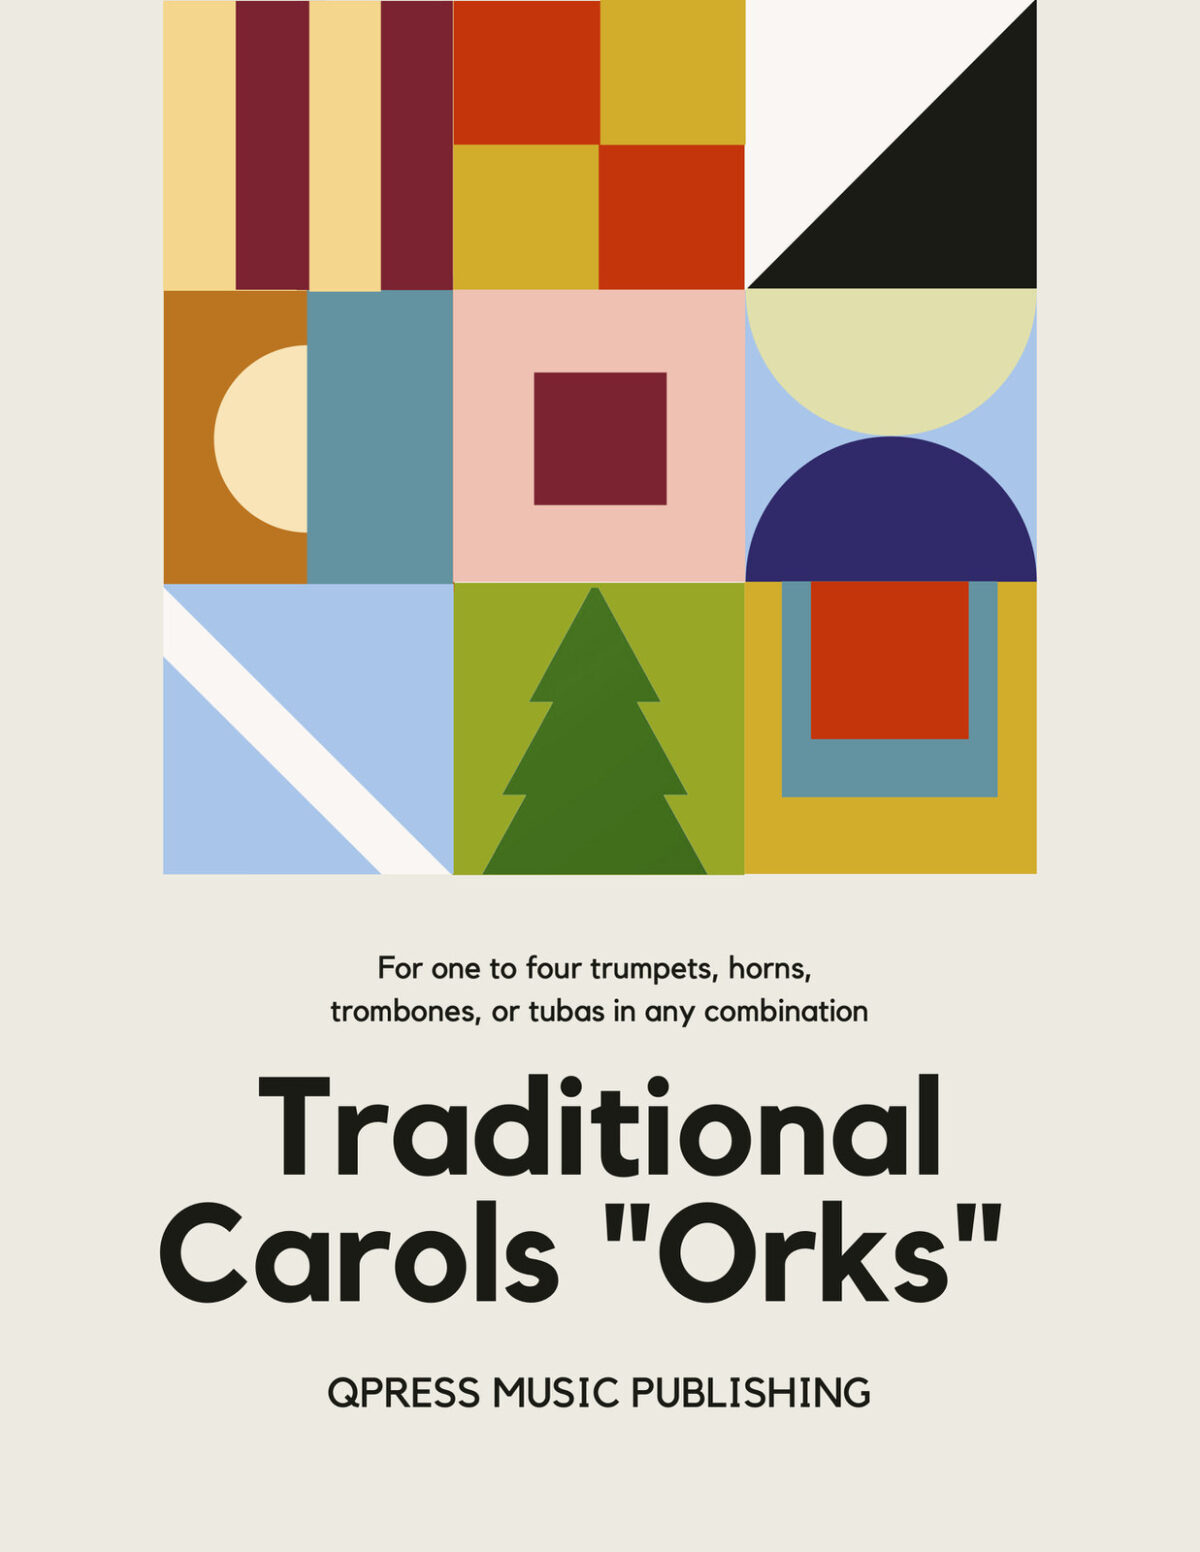 Traditional Christmas Carols "Orks"